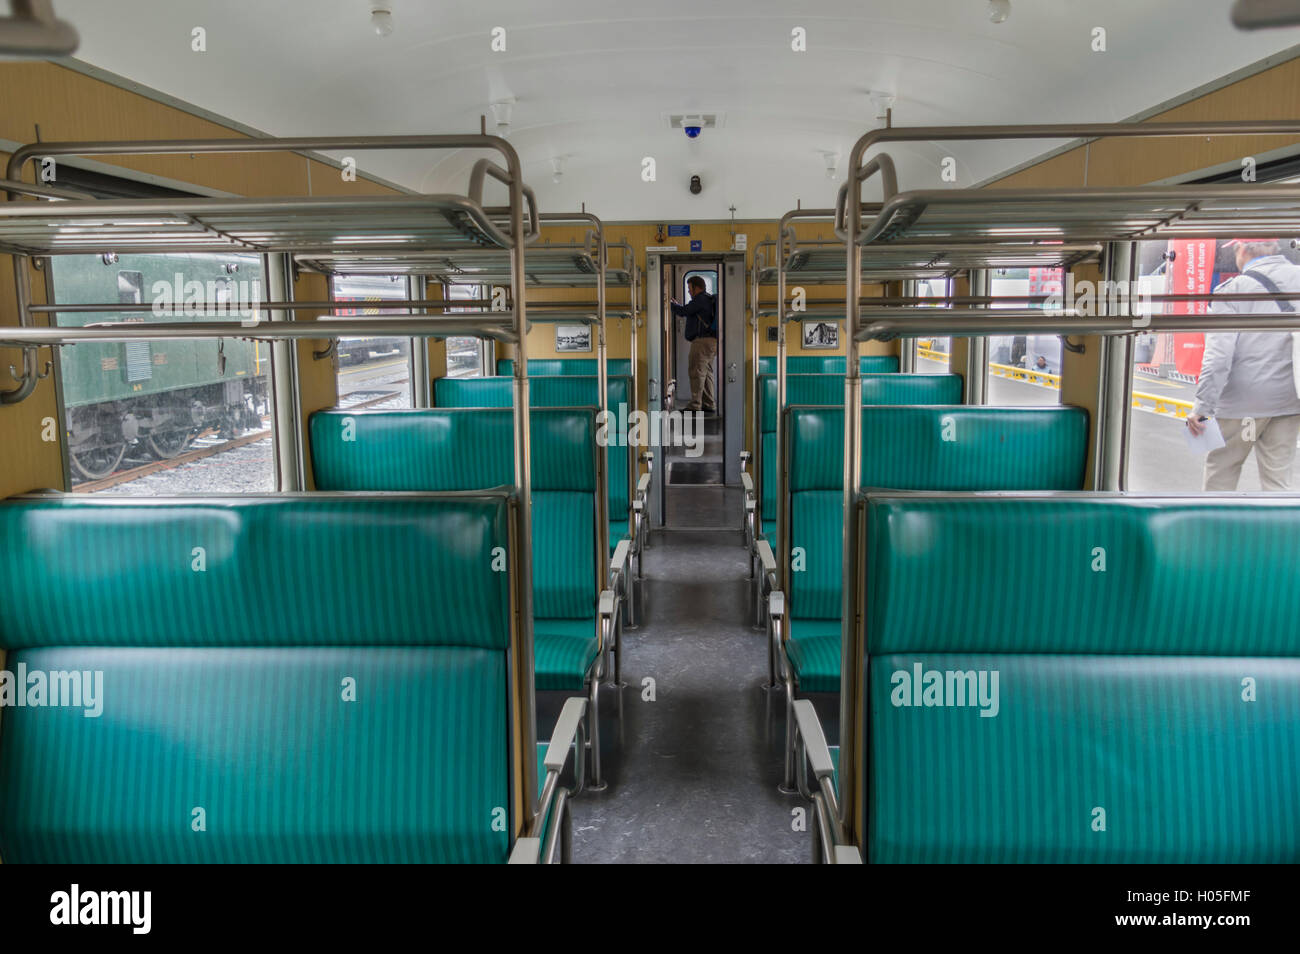 Vintage zweiter Klasse Zug Personenwagen des Typs Einheitswagen EW I, von SBB/CFF/FFS in der Schweiz betrieben. Stockfoto